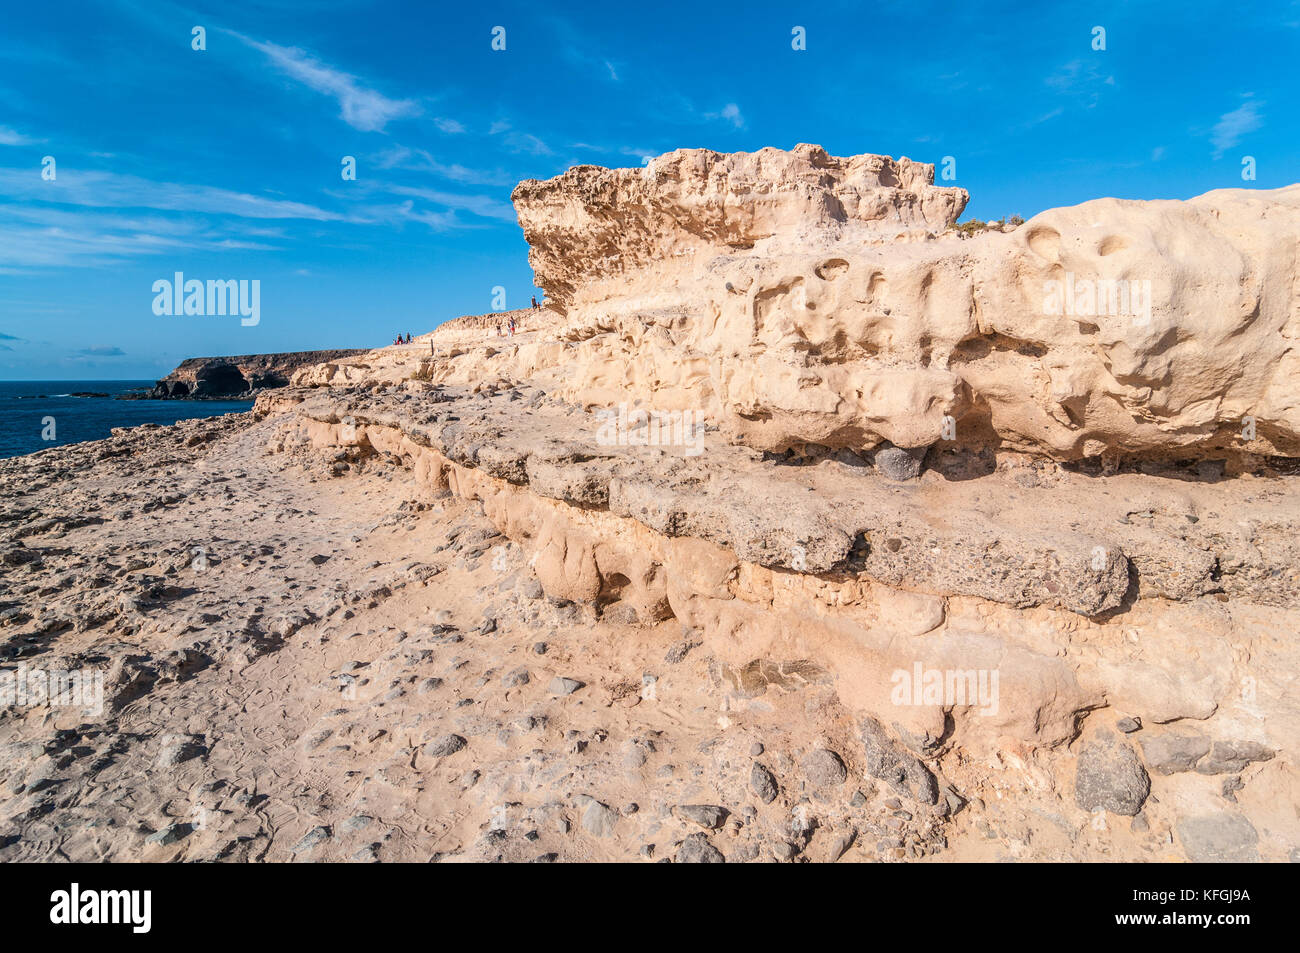 Dunes du pliocène calcarénites, formé par les restes fossiles de Shell et d'algues, les indicateurs de l'existence d'un climat plus chaud. Ajuy, Fuerteventura, Banque D'Images